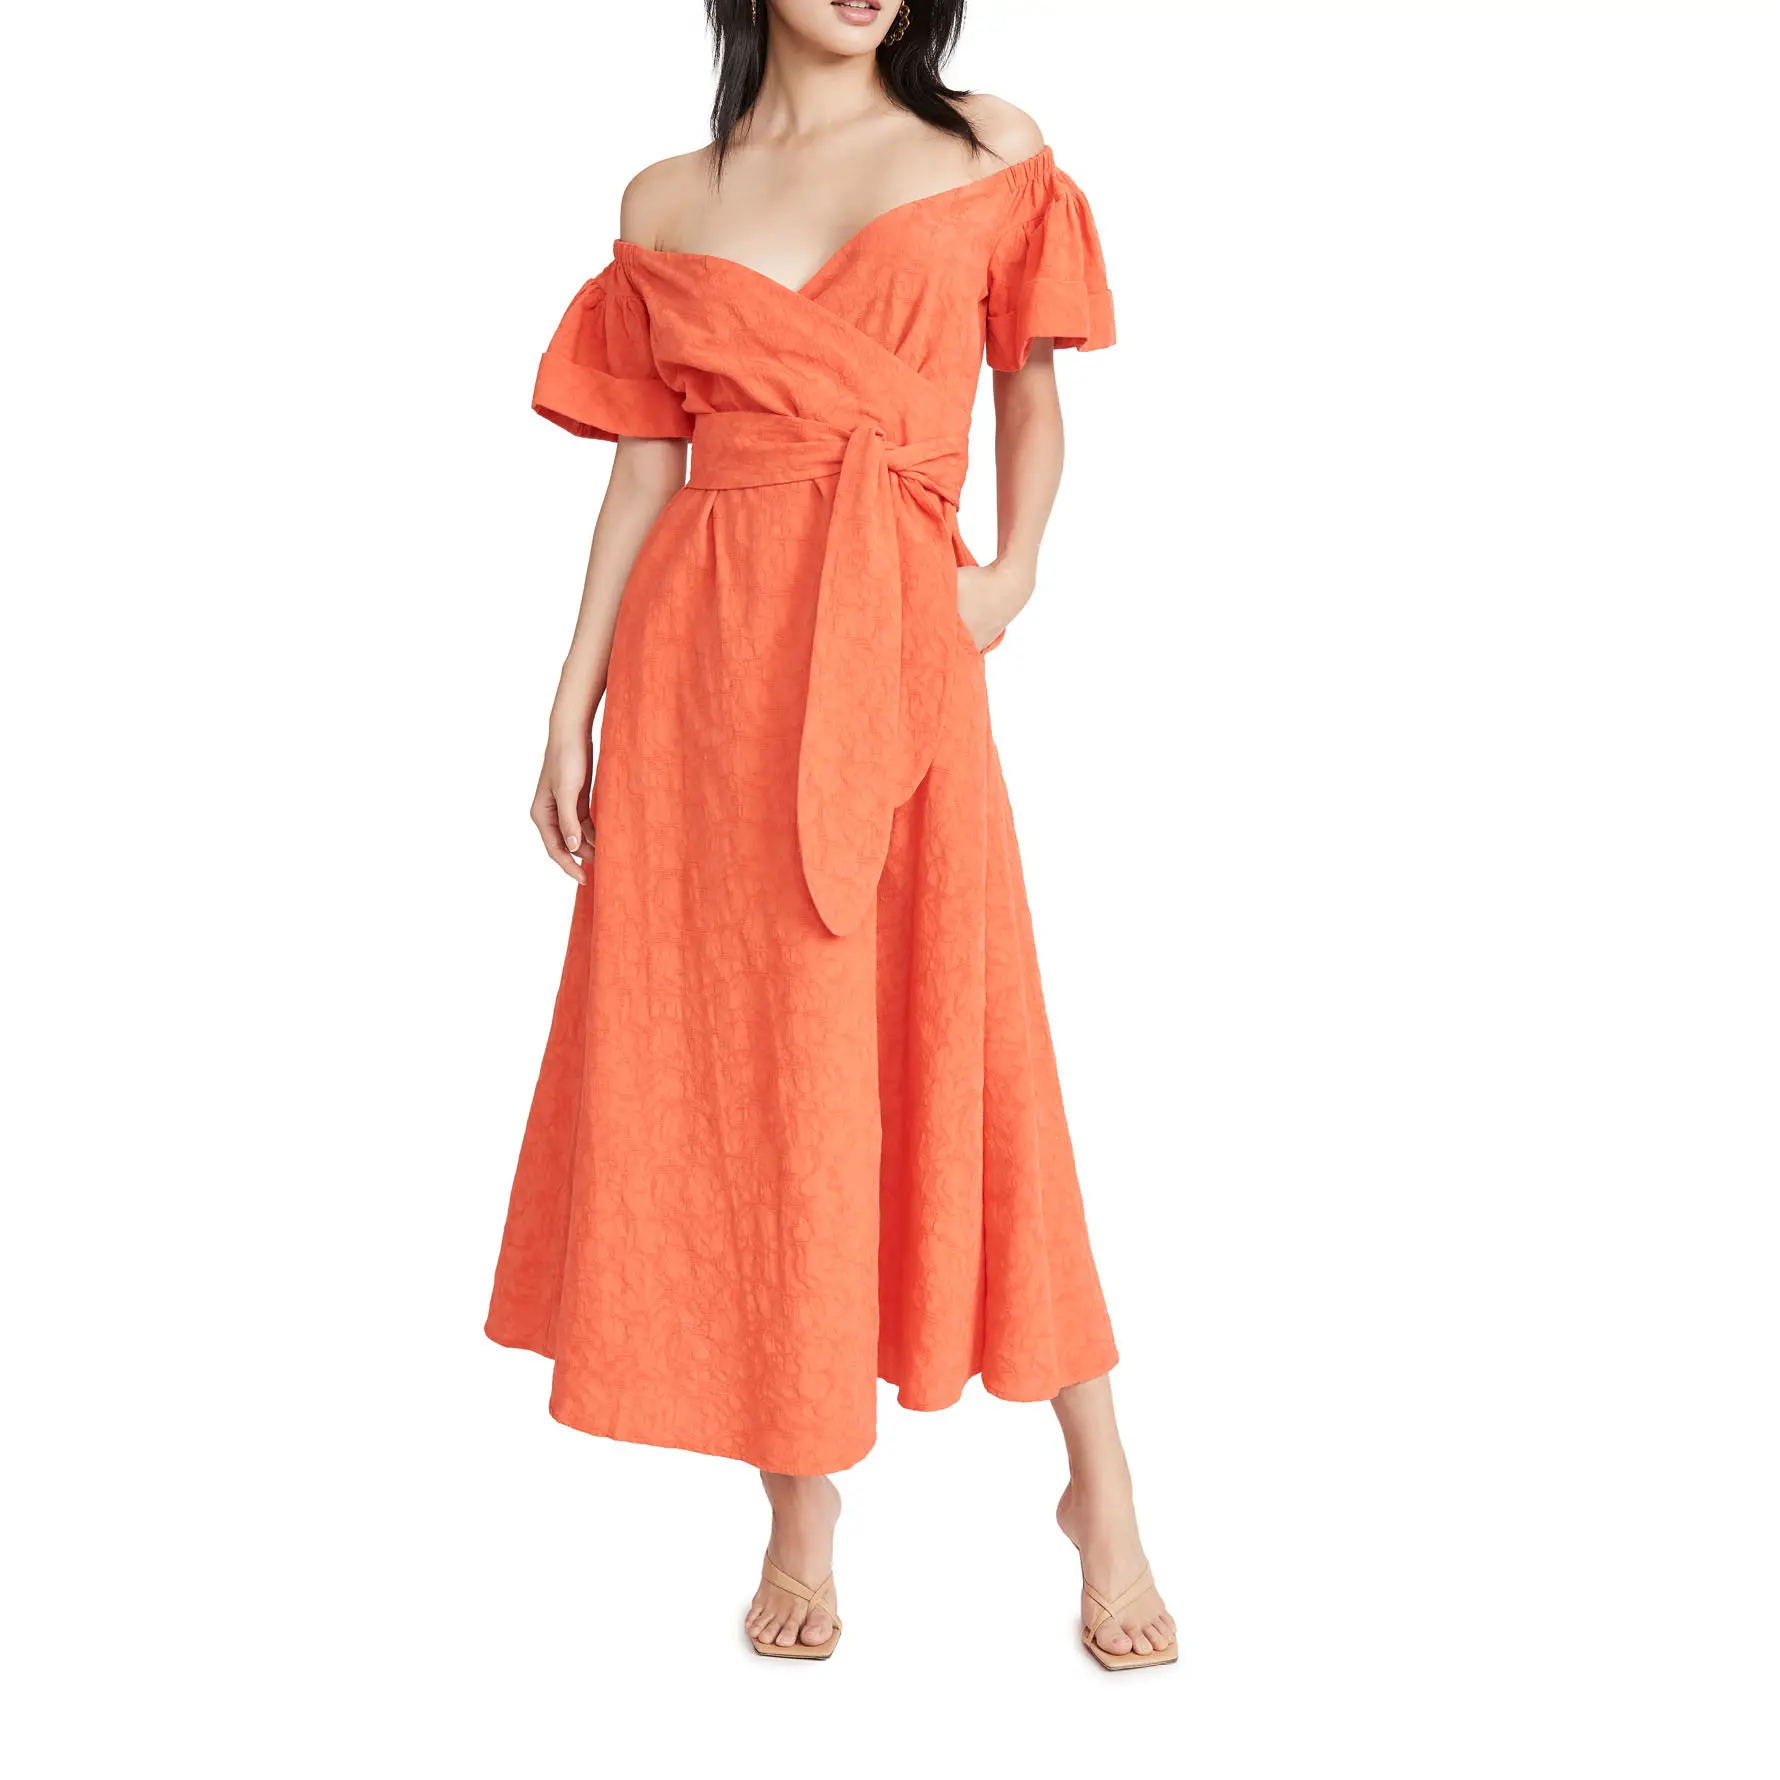 Оранжевое платье макси с коротким рукавом и открытыми плечами из 100% хлопка для женщин